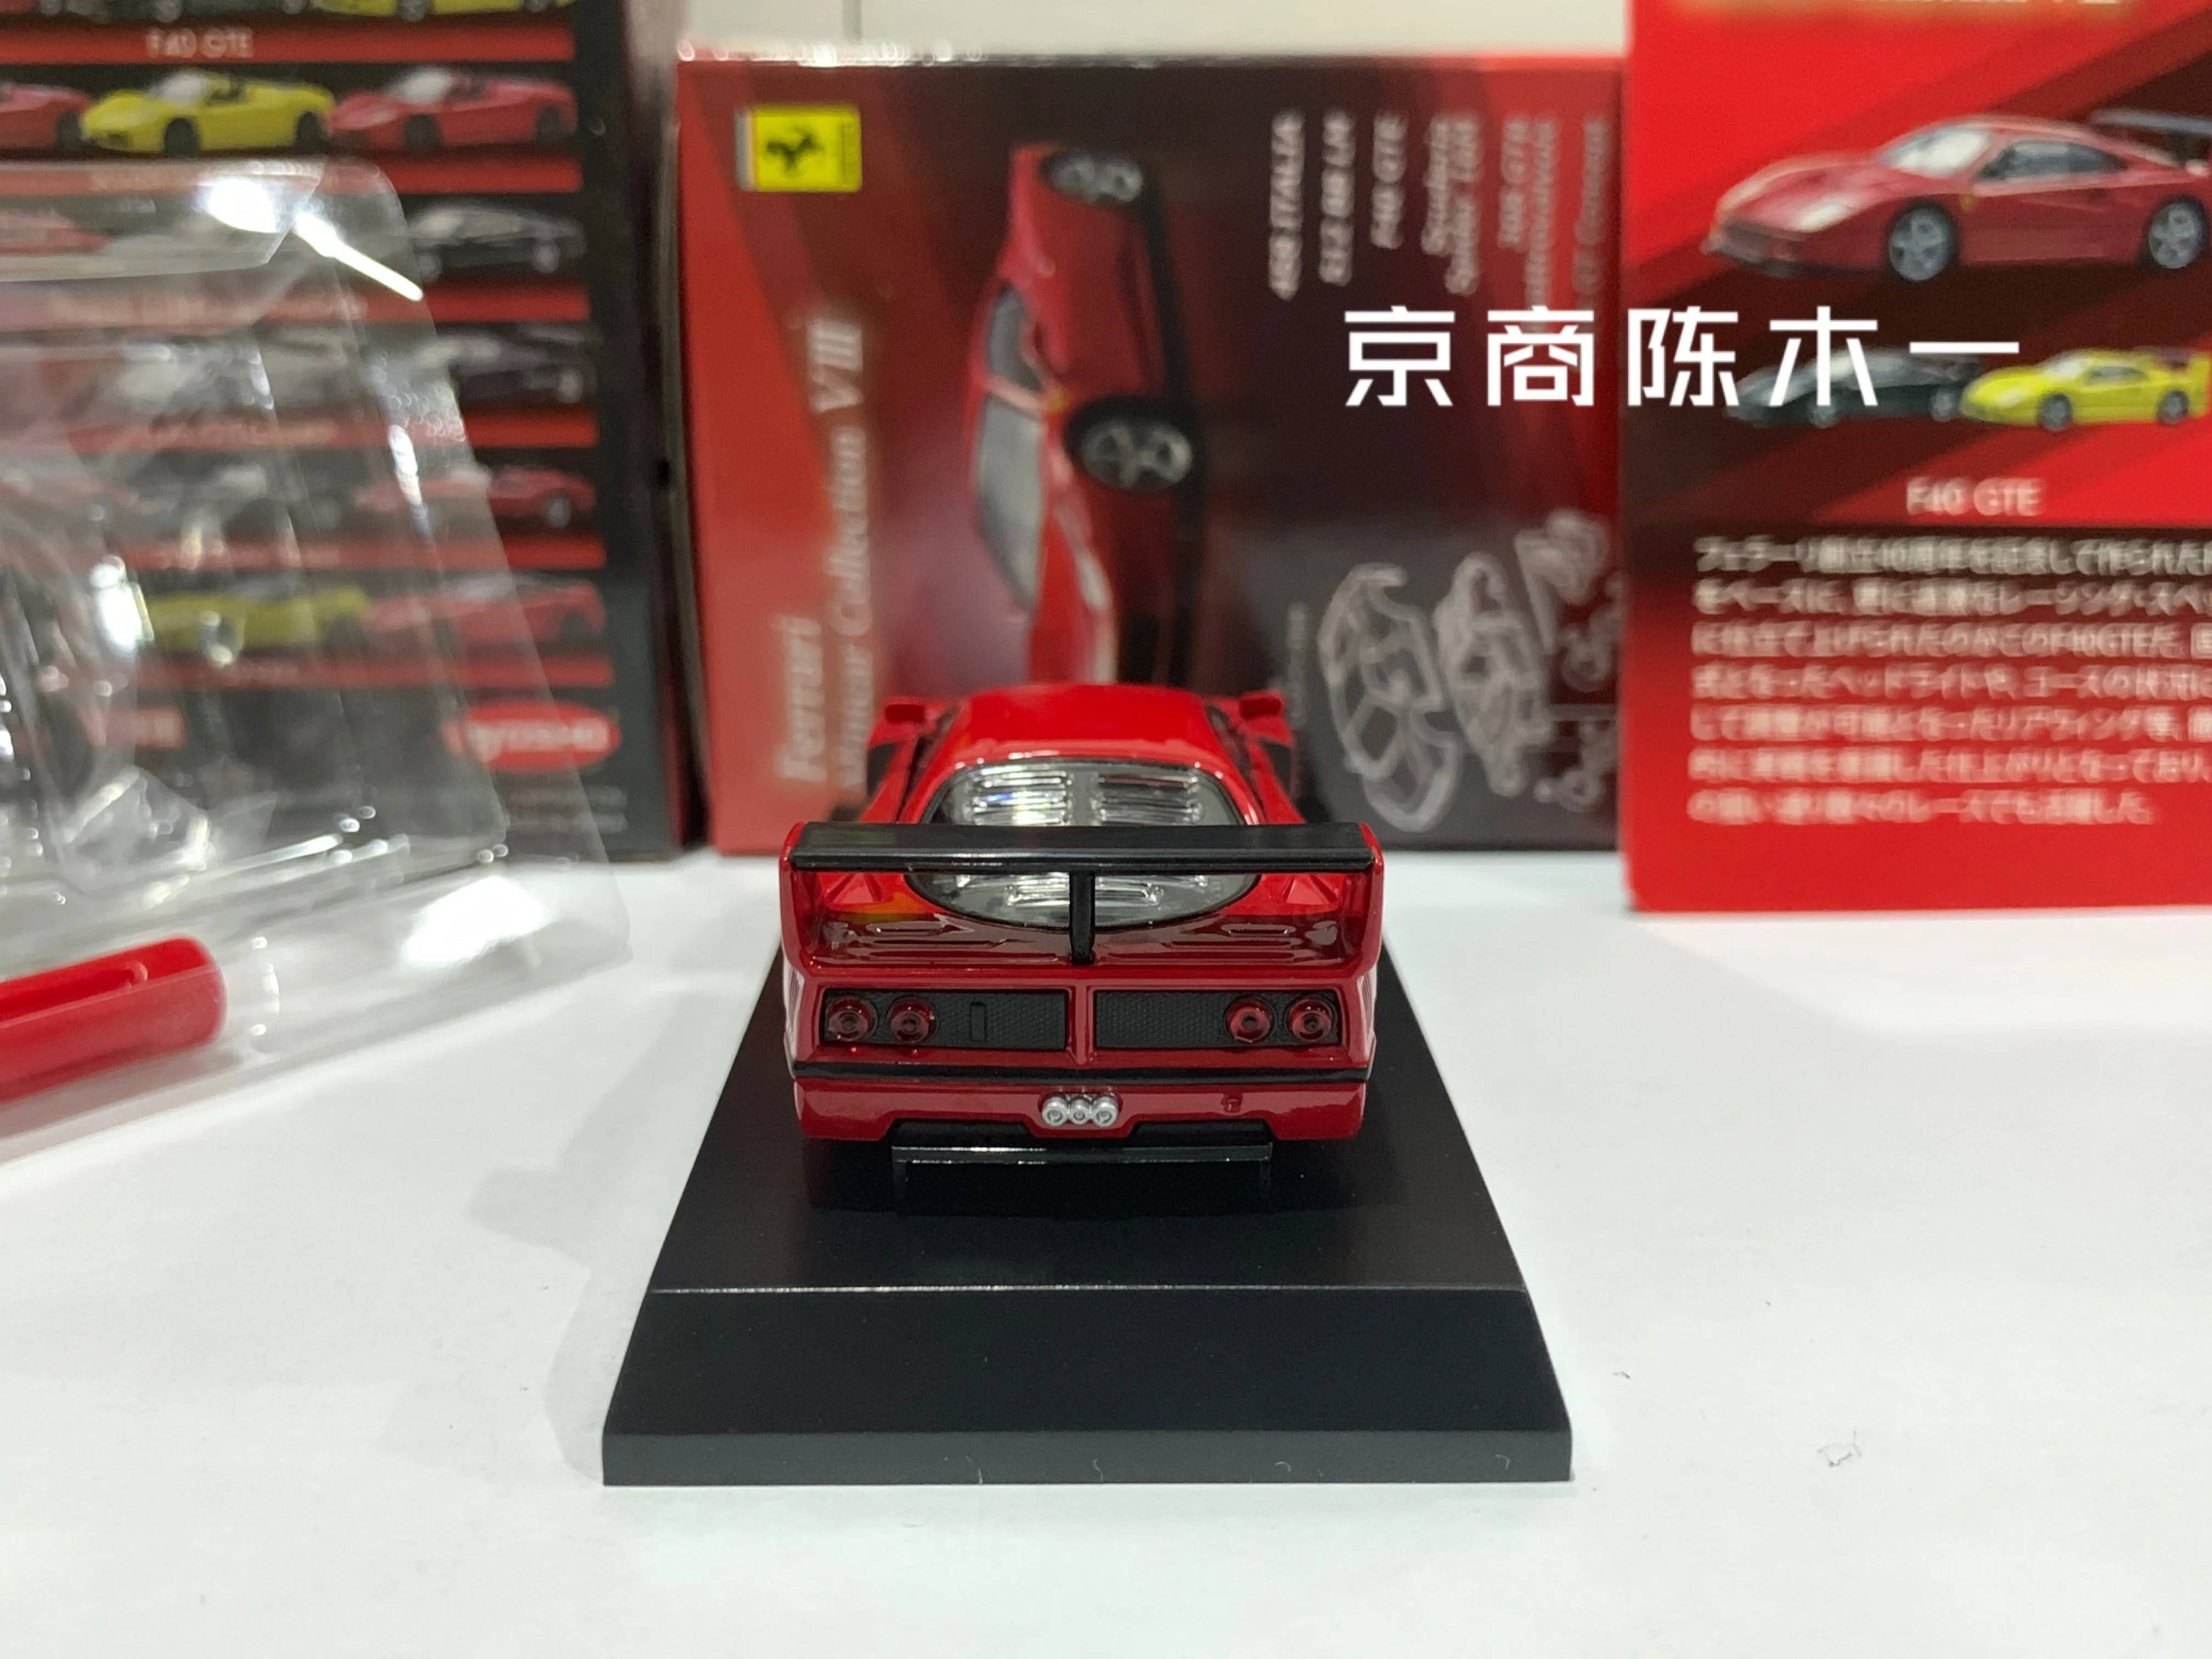 Kyosho Ferrari F40 GTE Coupe Silber 1987-1992 Bausatz Kit 1/64 Modell Auto mit individiuellem Wunschkennzeichen